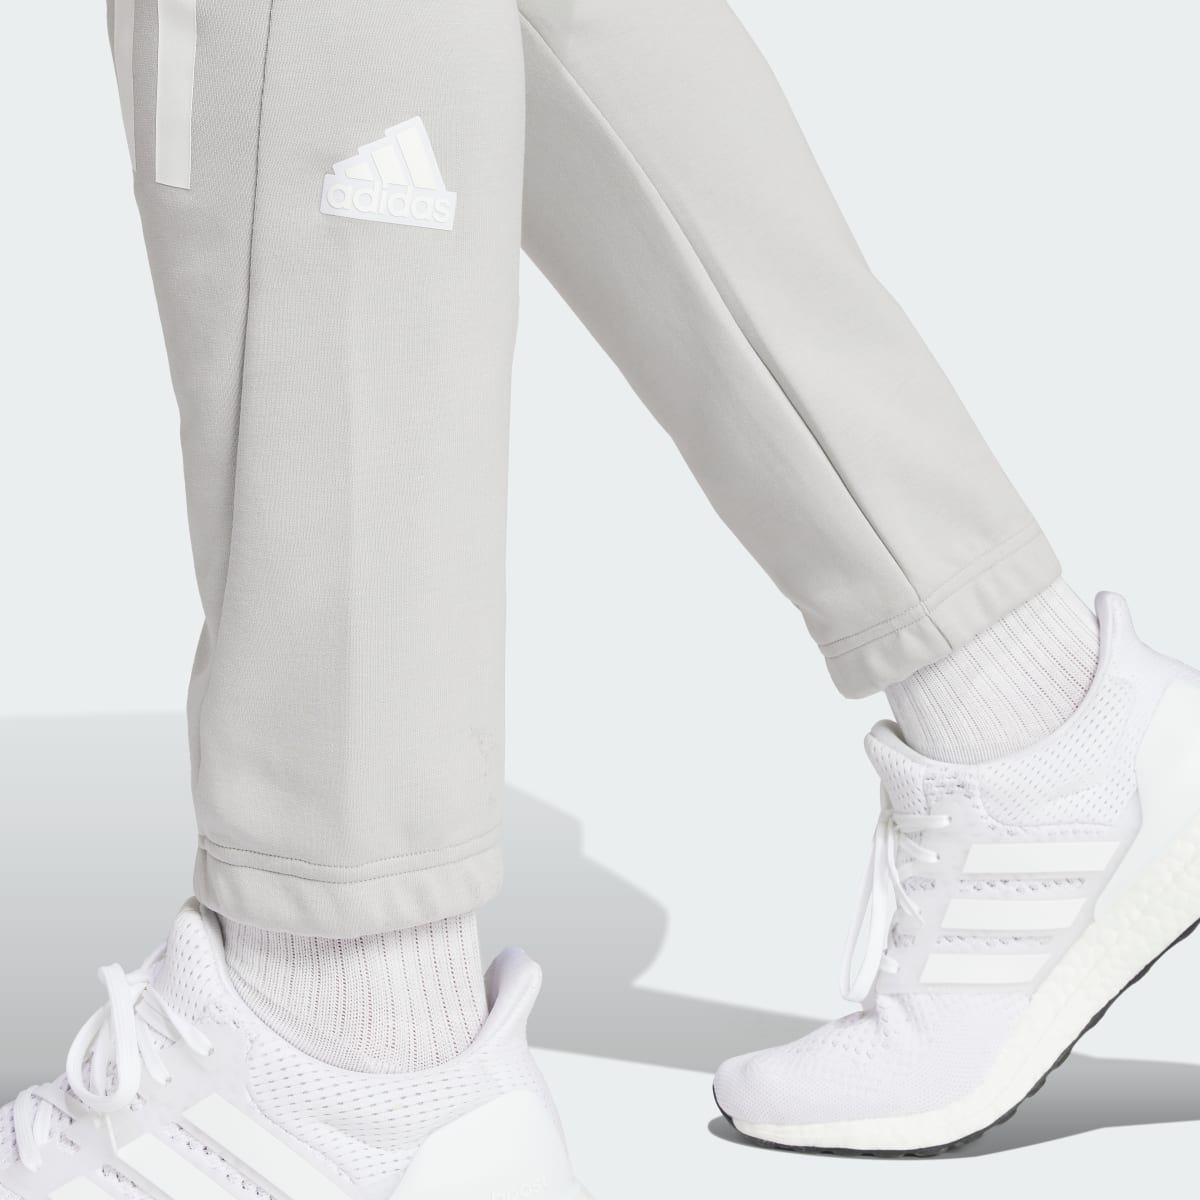 Adidas Future Icons 3-Streifen Hose. 6